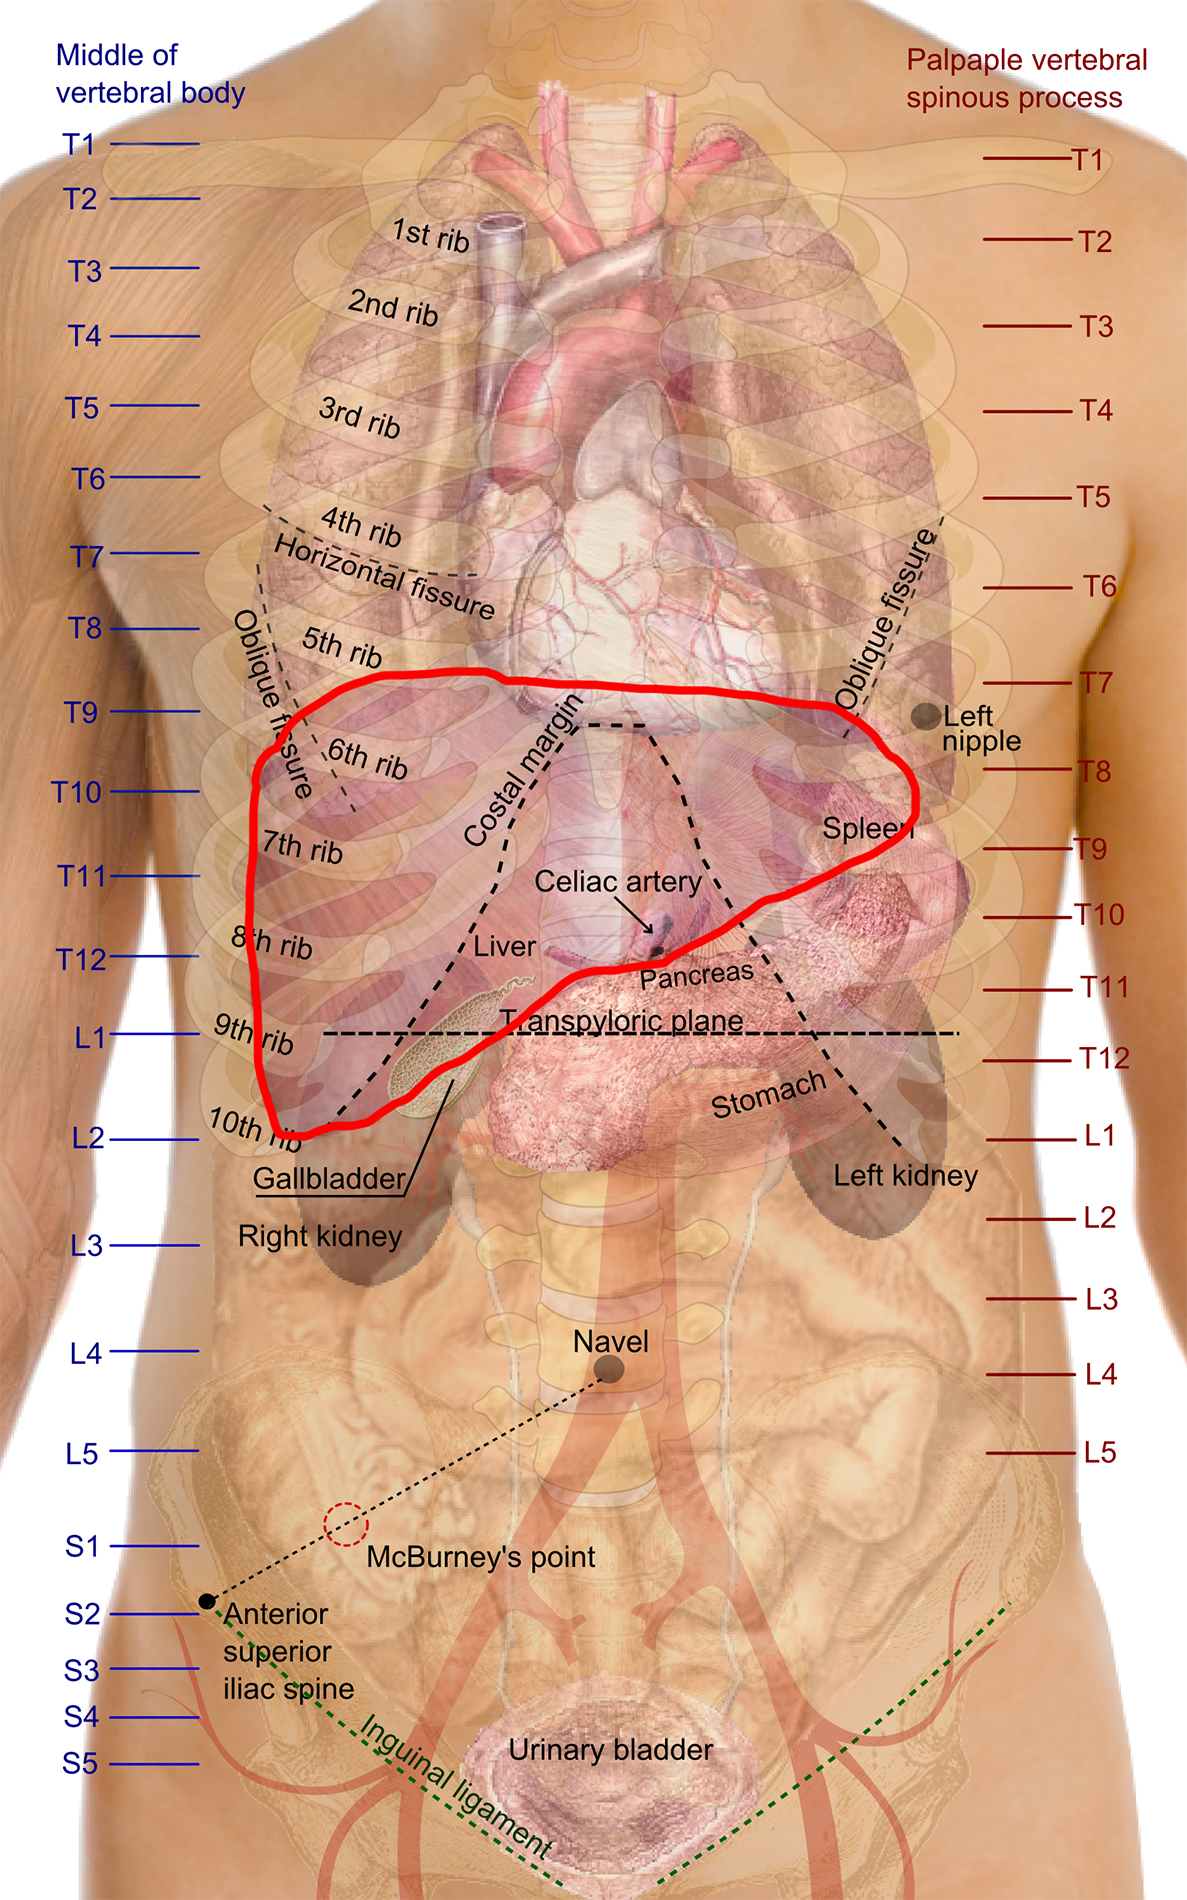 さとる Ossan Kunna ちなみに肝臓の位置はこちらになります 肋骨が邪魔なので肋骨ごと右胸下を撃ち抜くか 鳩尾狙っていくのが効率よさそうですね 元画像はwikipediaさんより T Co Uid7tfmj3s Twitter